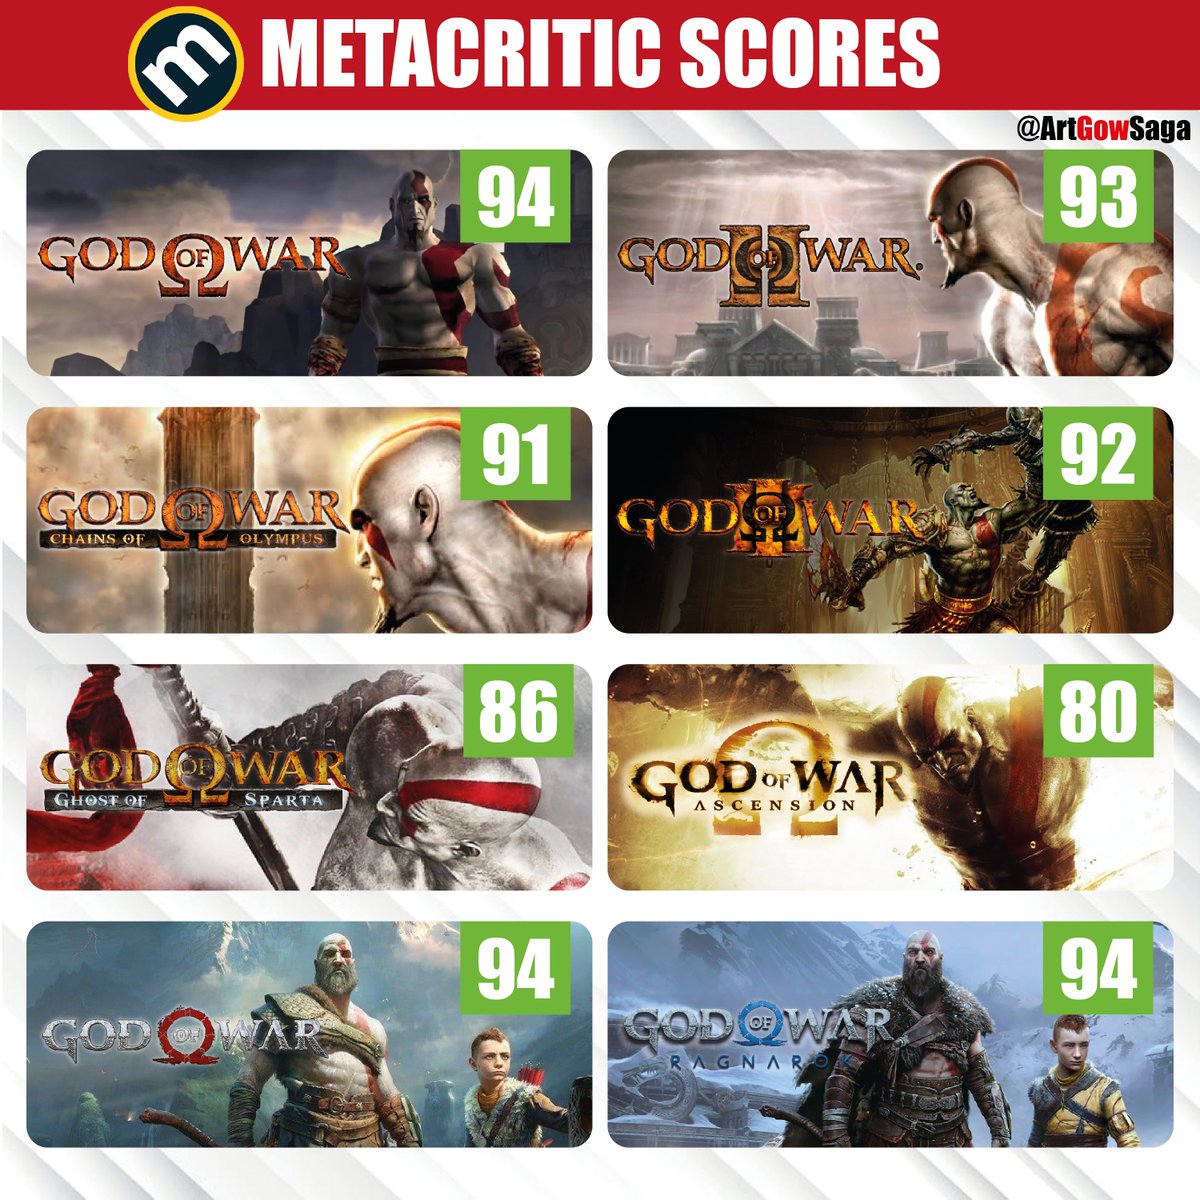 God of War: do pior para o melhor (ranking segundo o Metacritic)